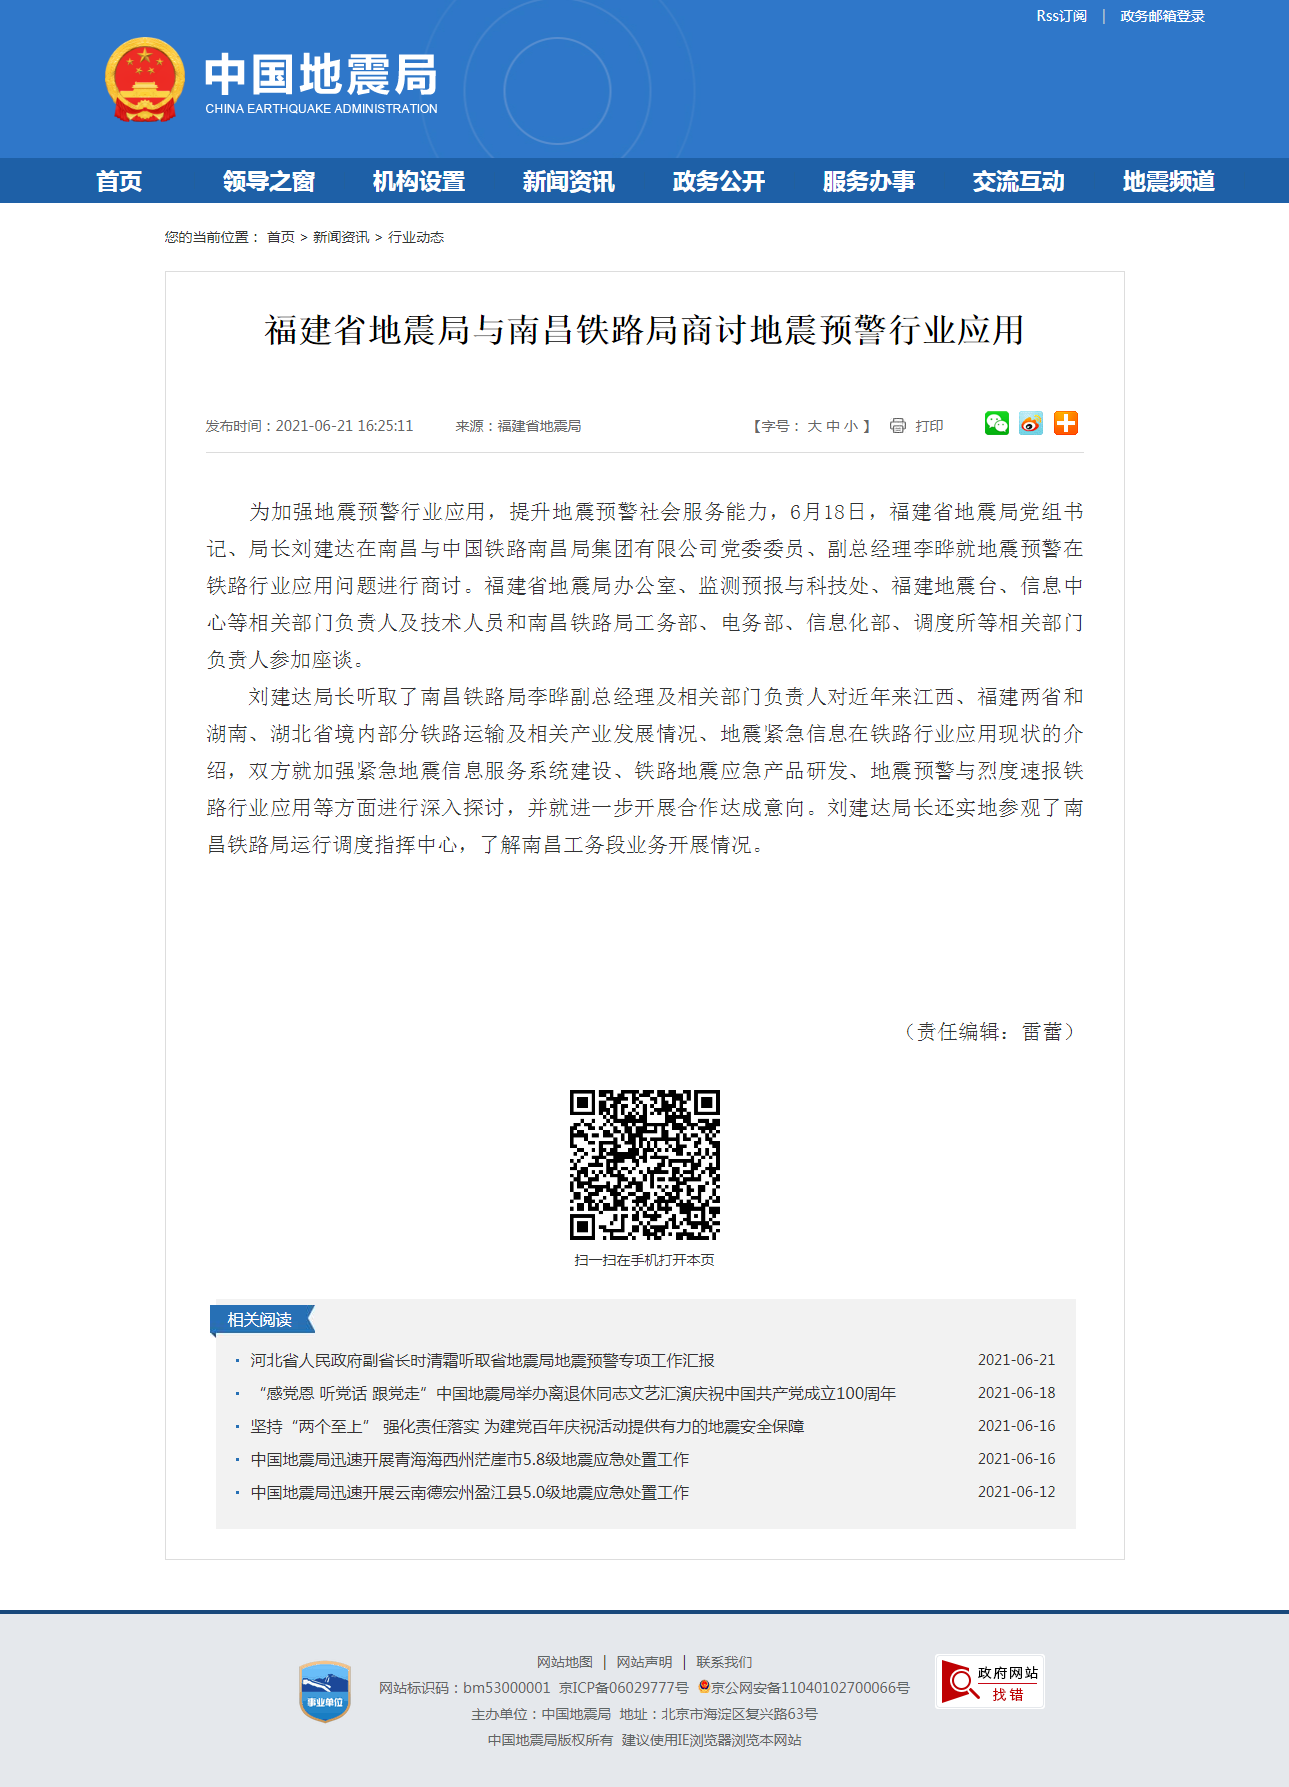 福建省地震局与南昌铁路局商讨地震预警行业应用.png